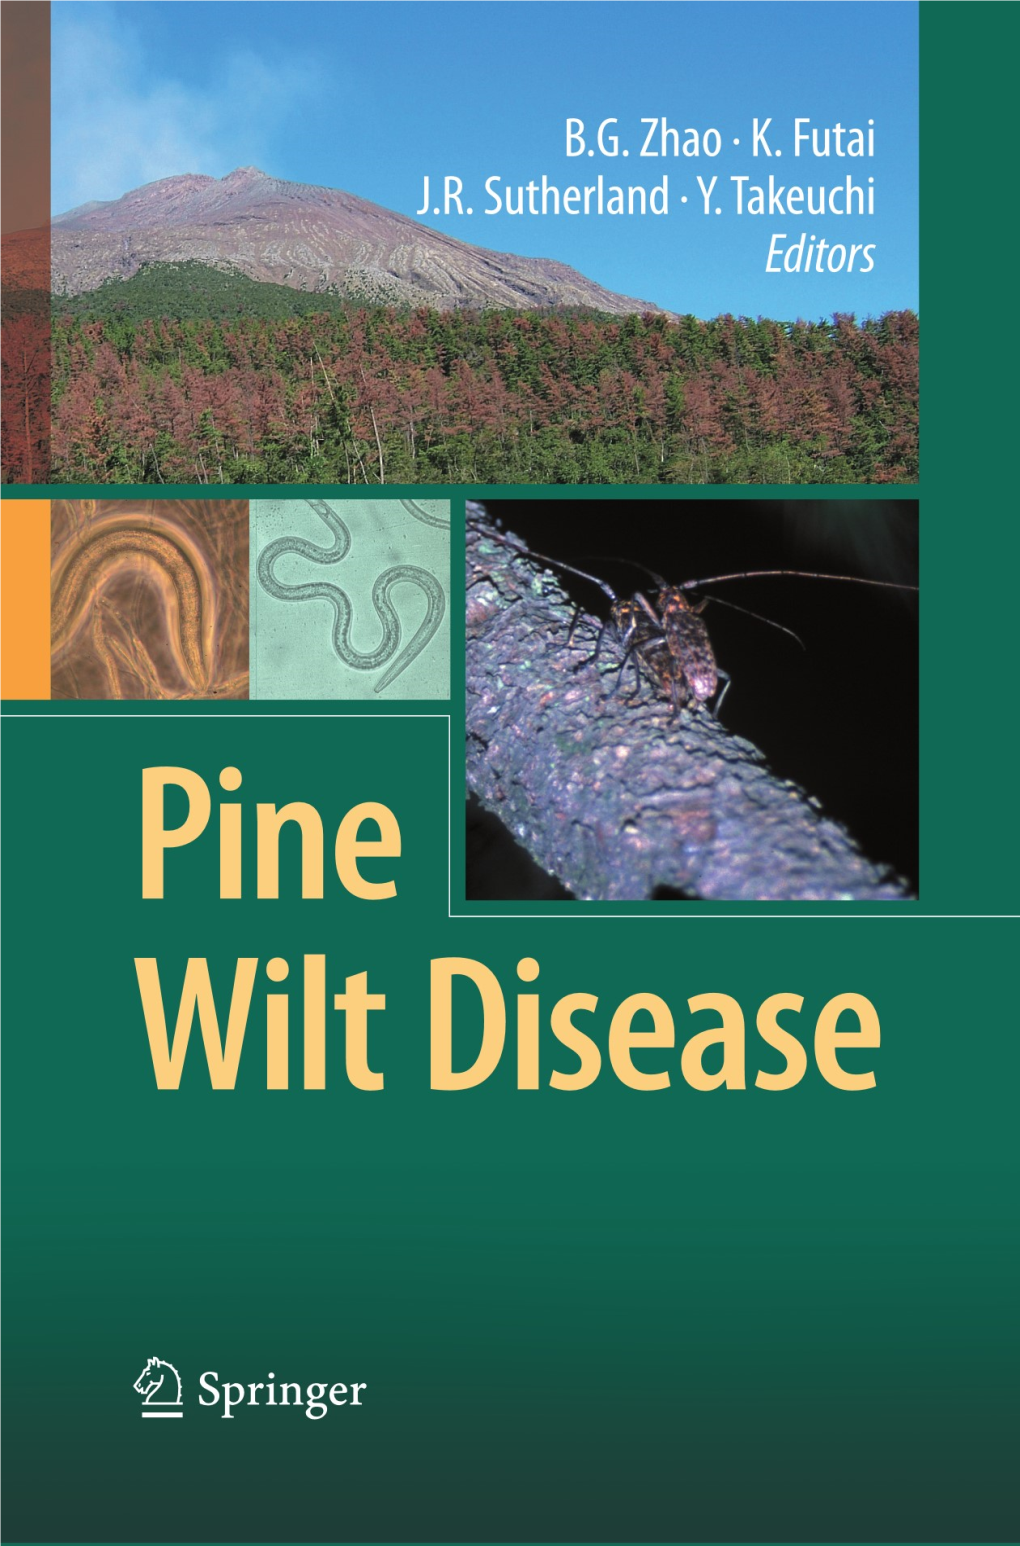 Pine Wilt Disease in Portugal